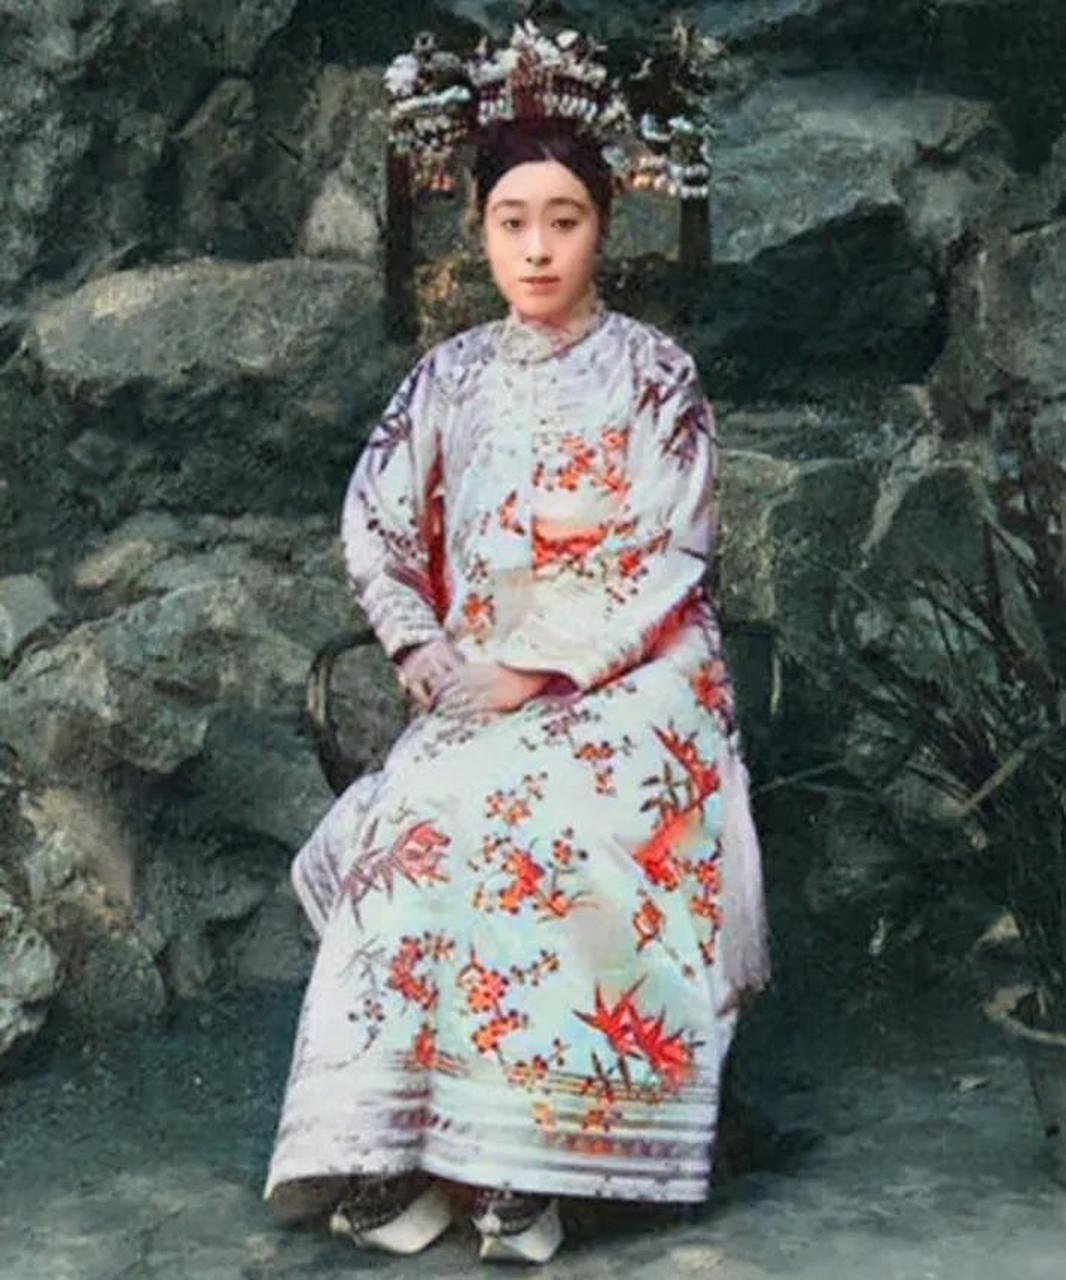 德龄公主,原名裕德龄,是清朝的贵族裕庚之女,出生于1886年